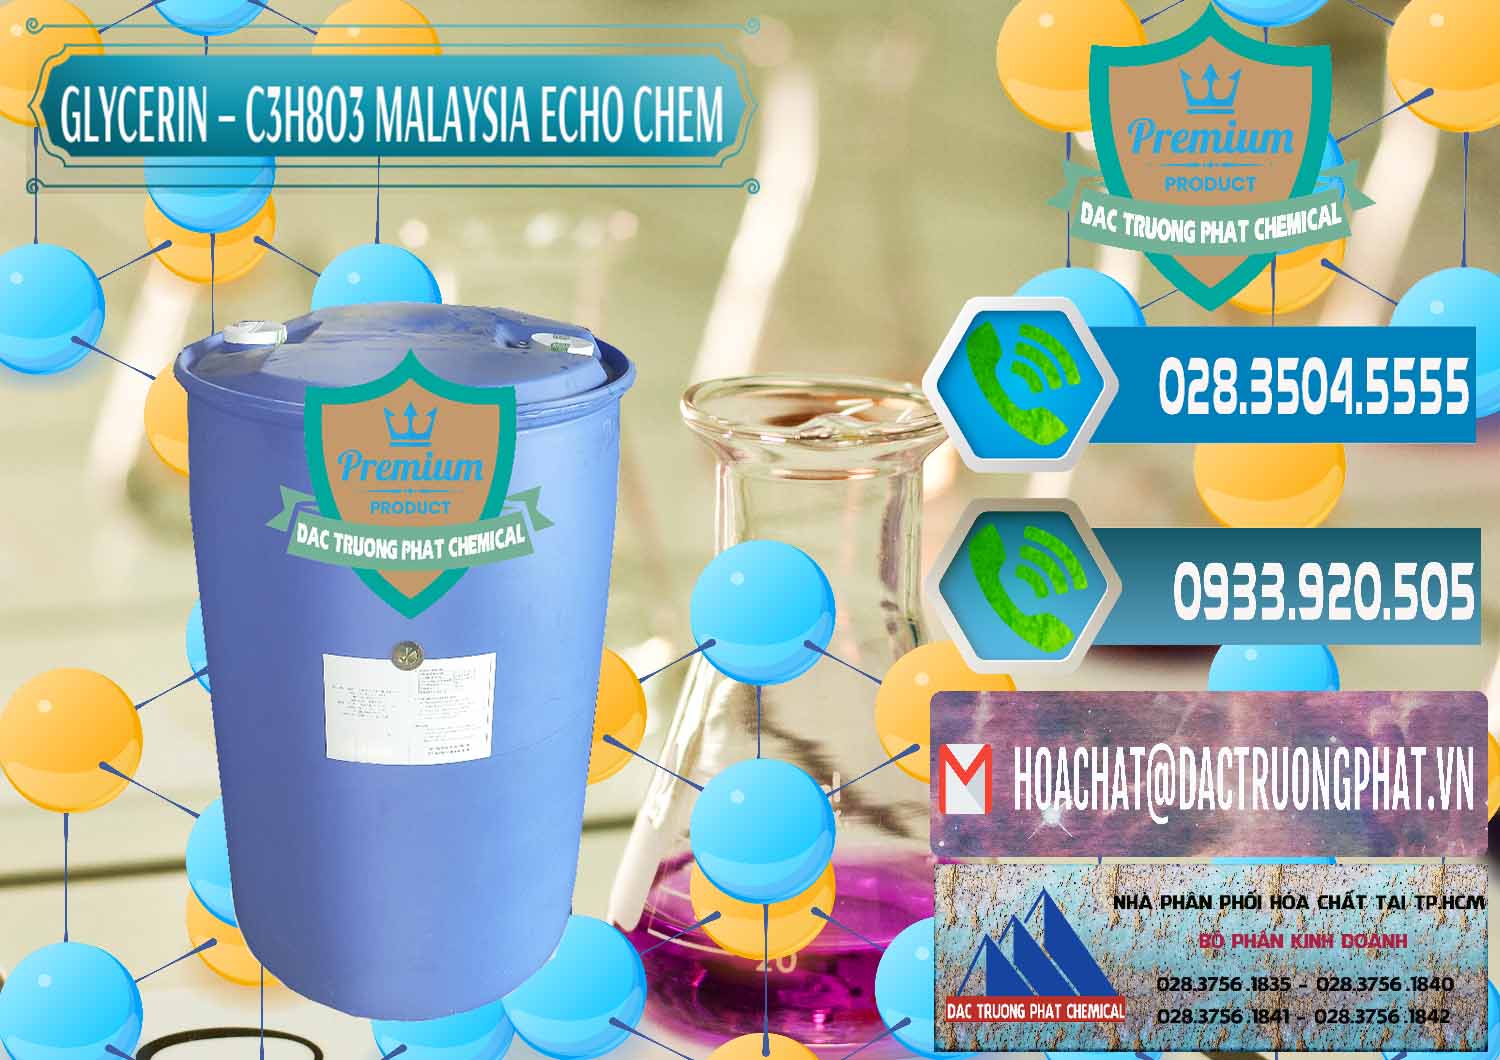 Công ty chuyên bán ( cung ứng ) Glycerin – C3H8O3 99.7% Echo Chem Malaysia - 0273 - Nơi cung cấp _ nhập khẩu hóa chất tại TP.HCM - congtyhoachat.net